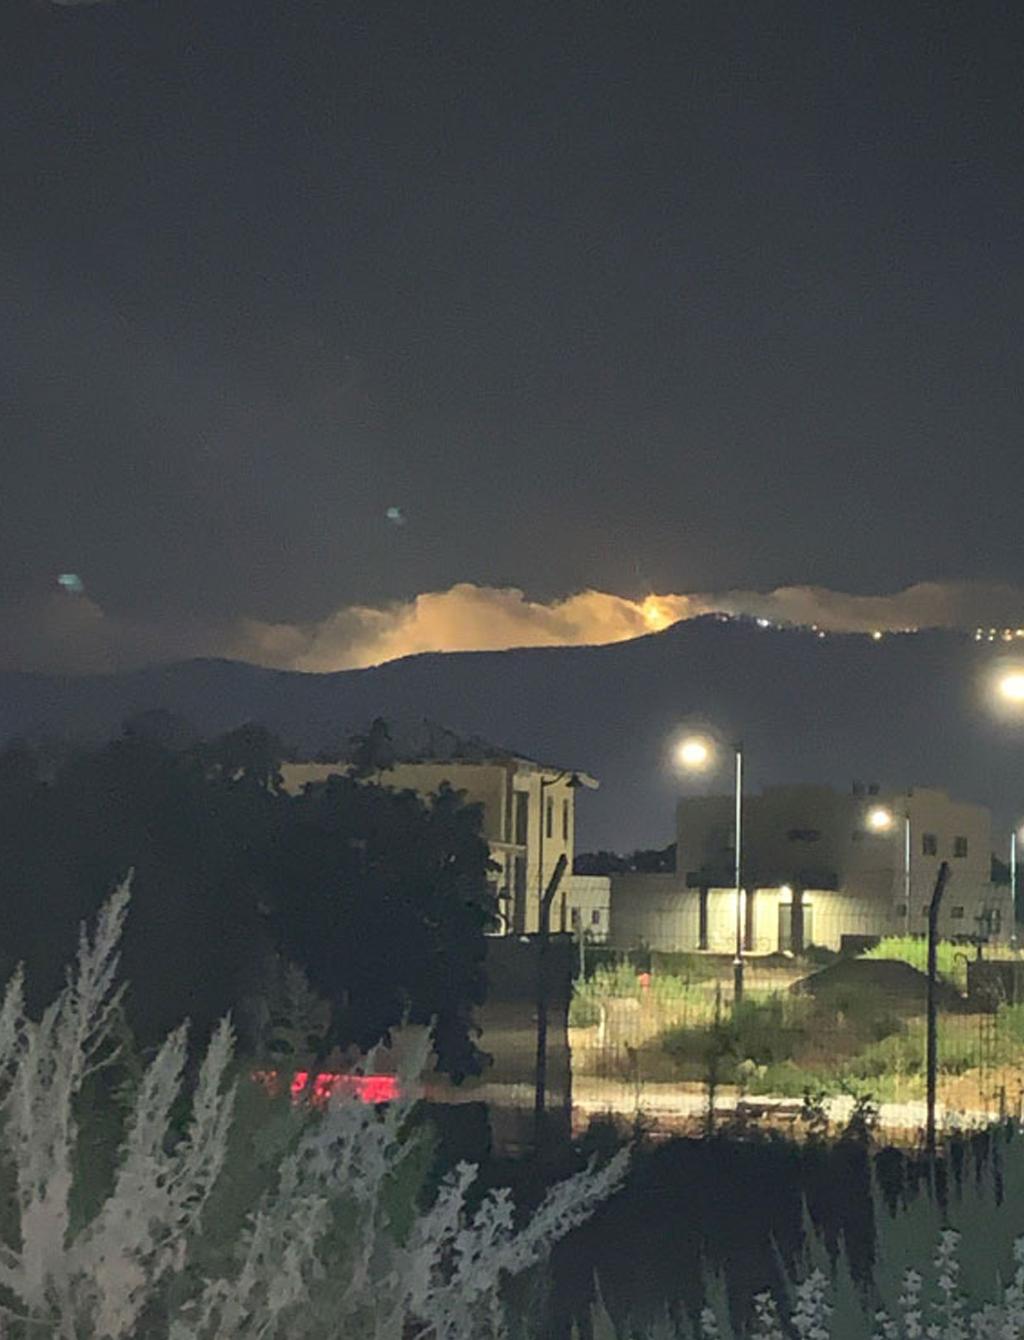 תיעוד פצצות התאורה מהצד הלבנוני